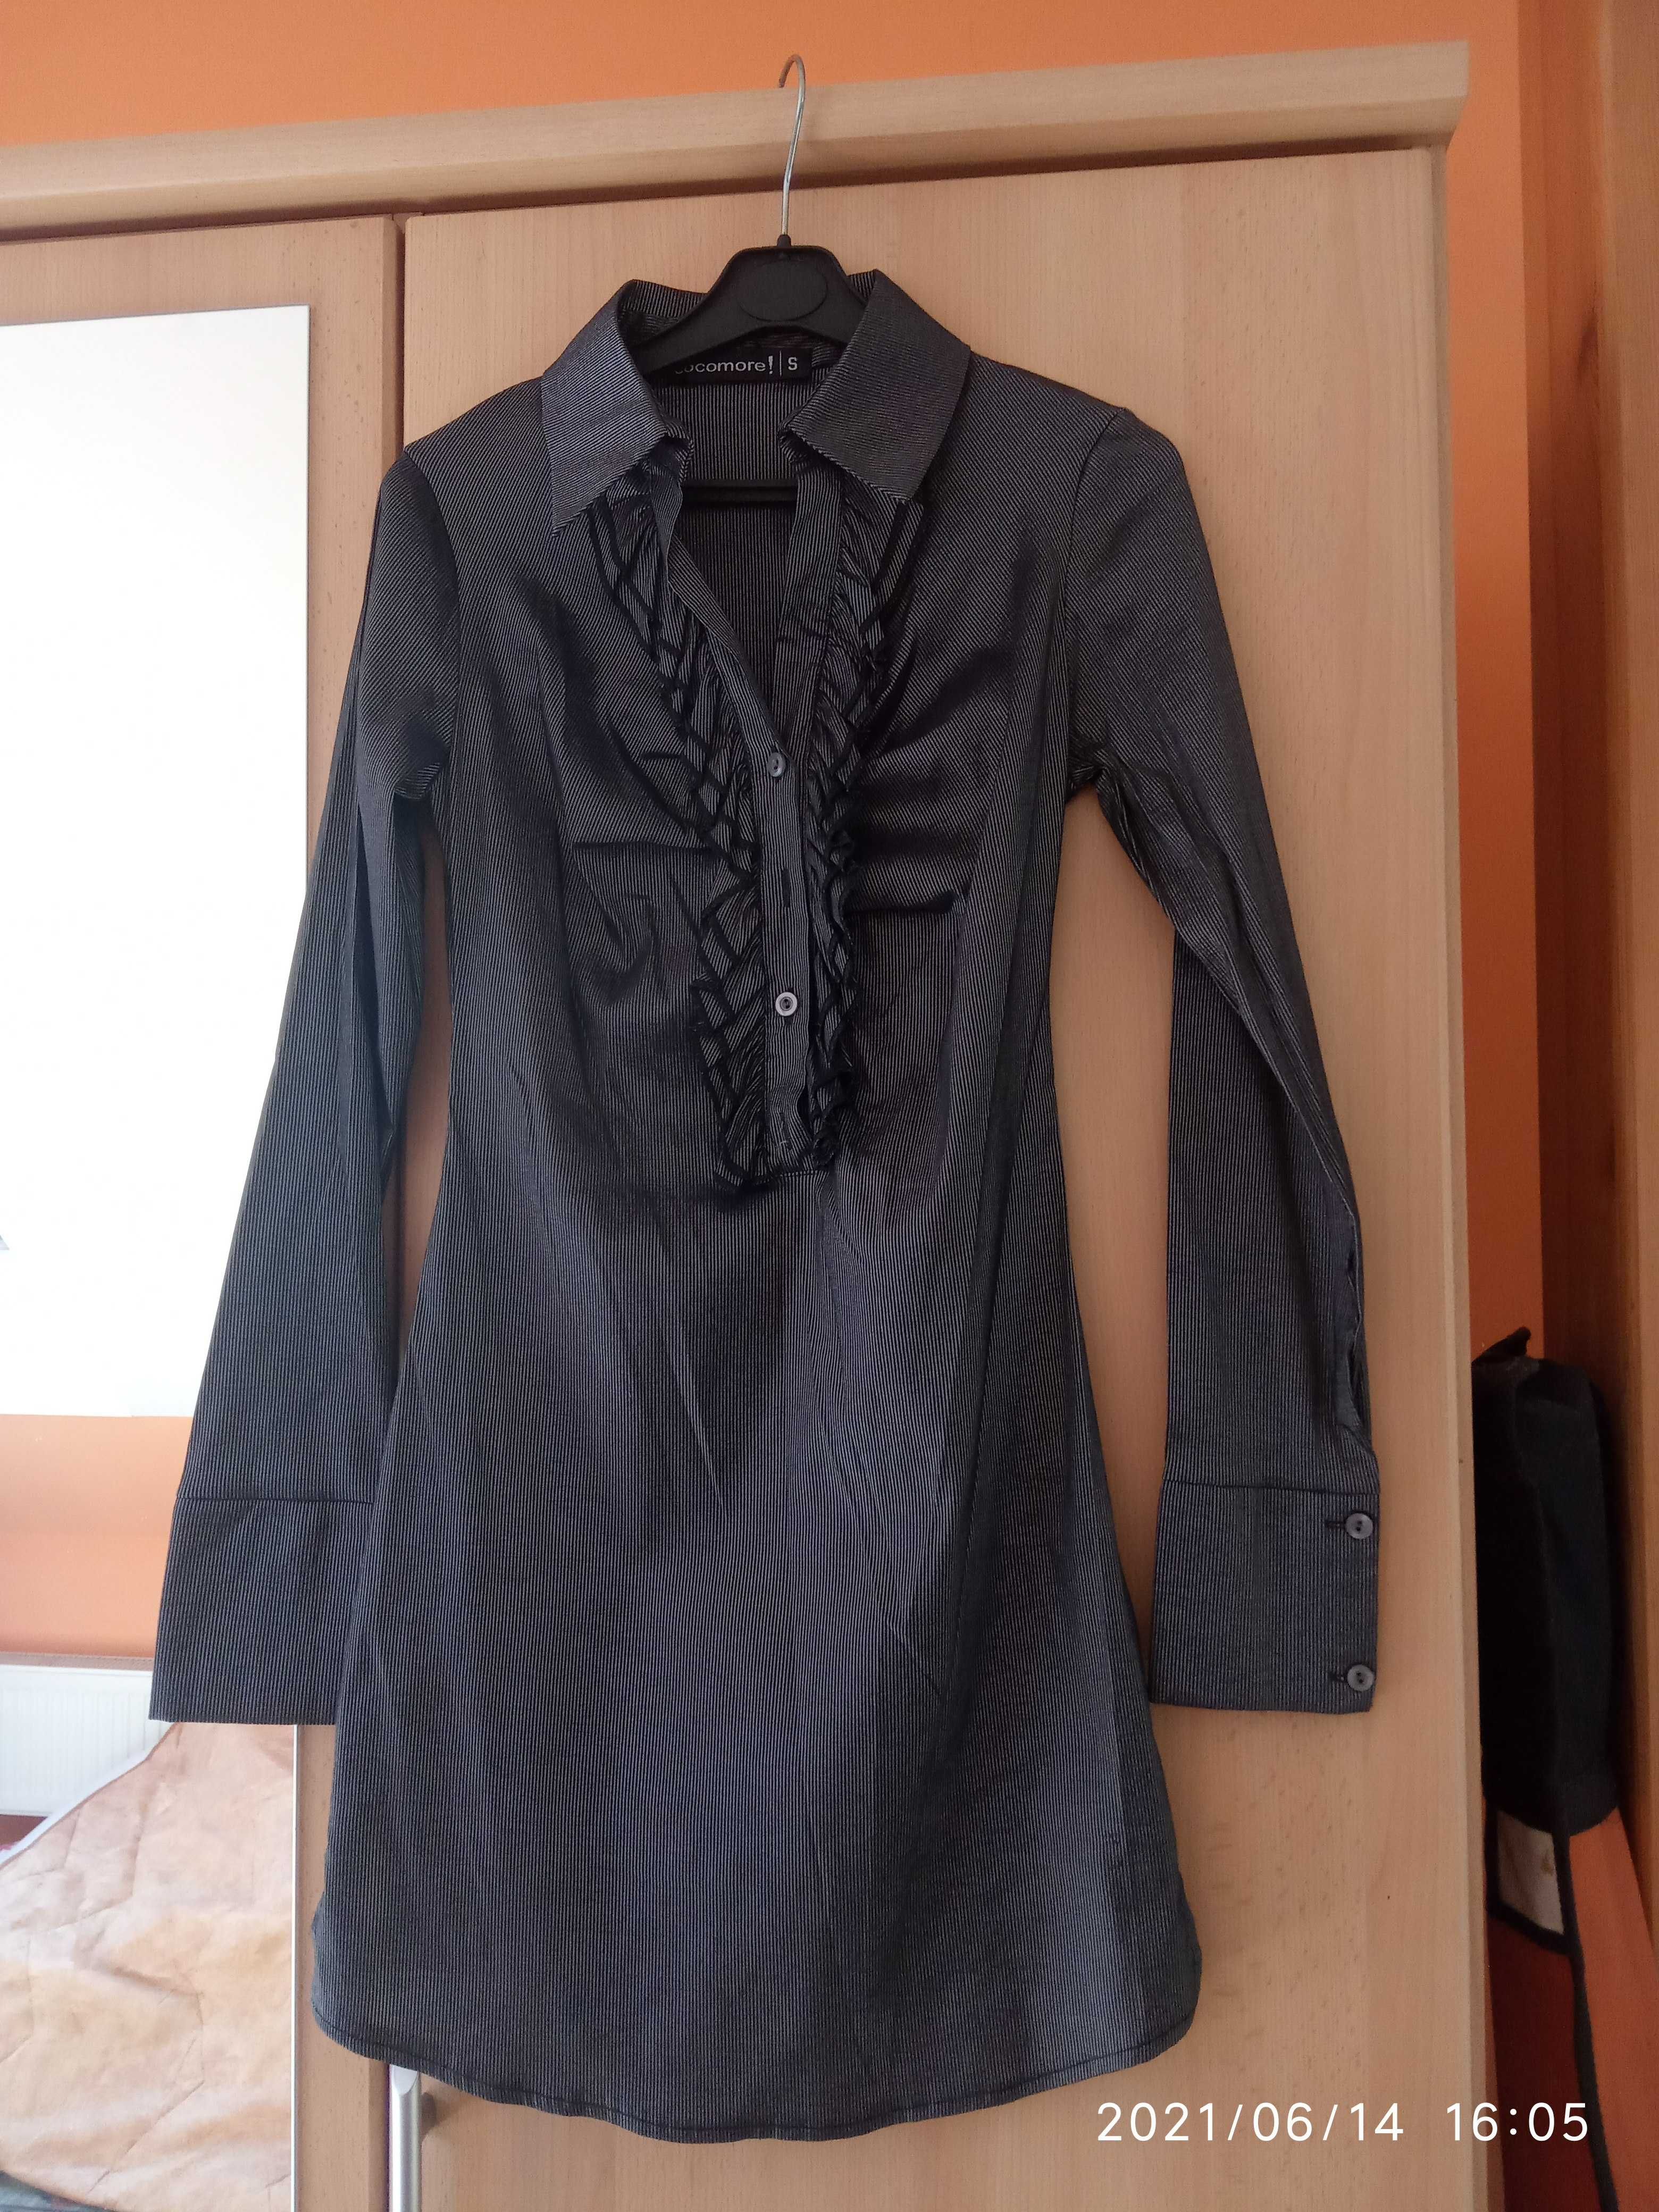 długa błyszcząca koszula damska tunika stylowa retro gotyk żabot r. S